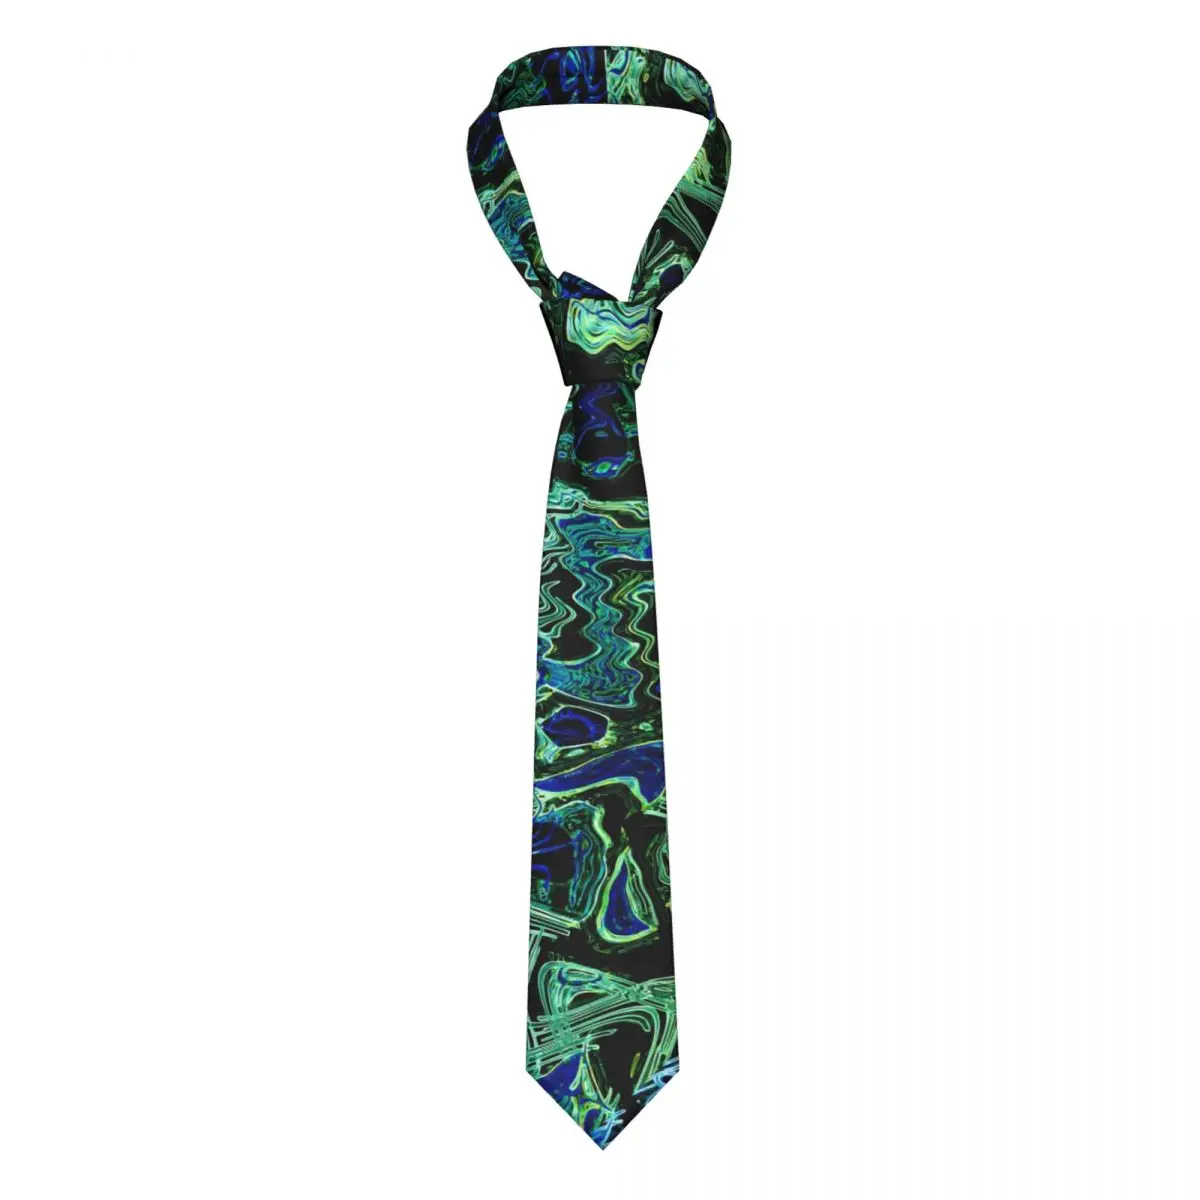 

Галстук с неоновым рисунком черный синий зеленый абстрактный мужской шейный галстук с узором Подарочная рубашка формальный галстук 8 см